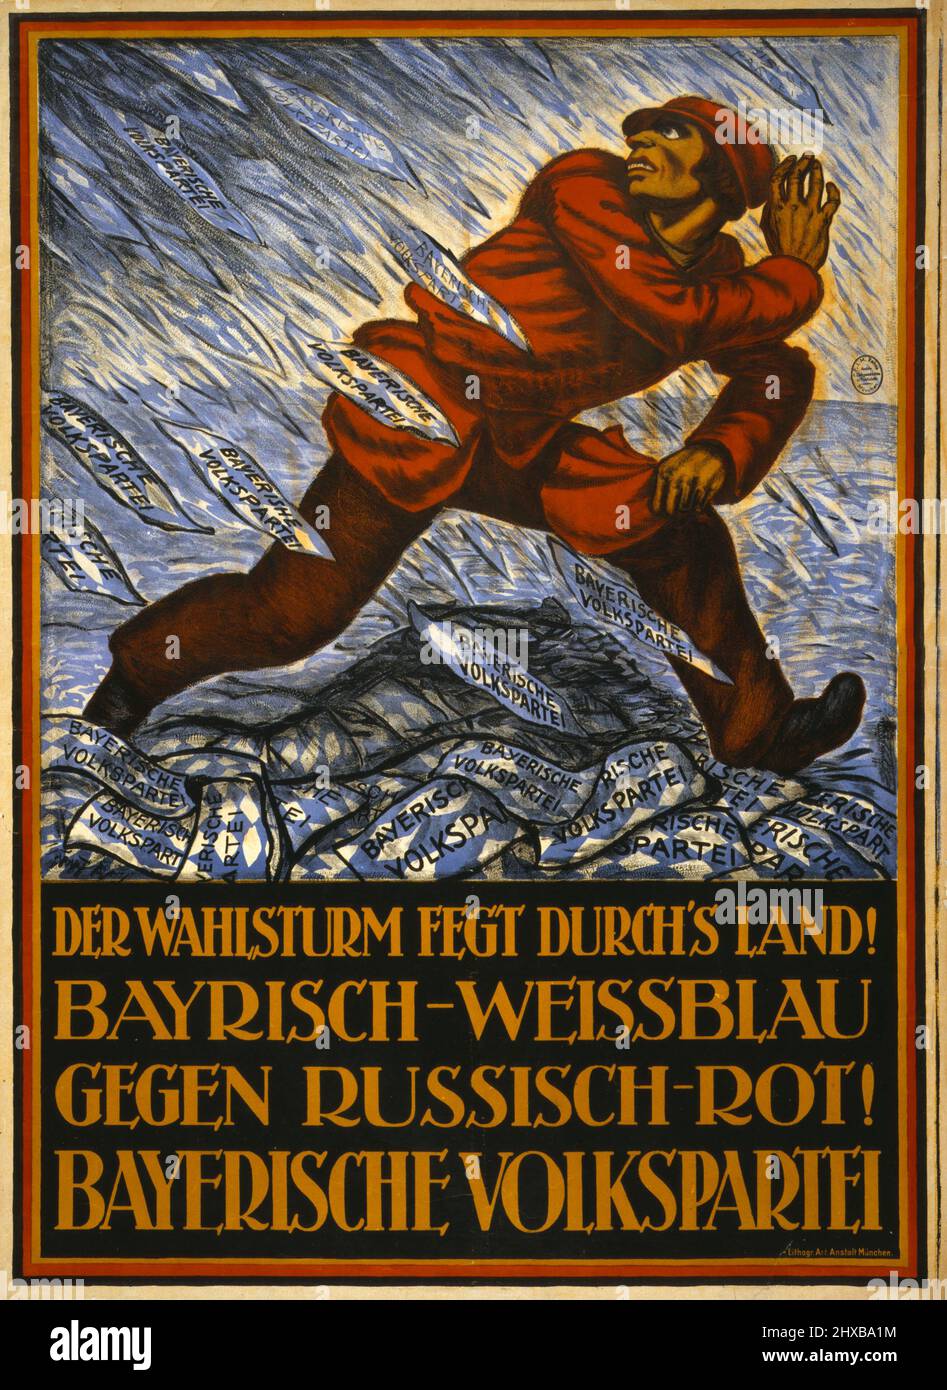 Der Wahlsturm fegt durch's Land! Bayerisch-Weissblau gegen Russisch-Rot! Bayerische Volkspartei. Artist: Hermann Keimel. 1919. Stock Photo